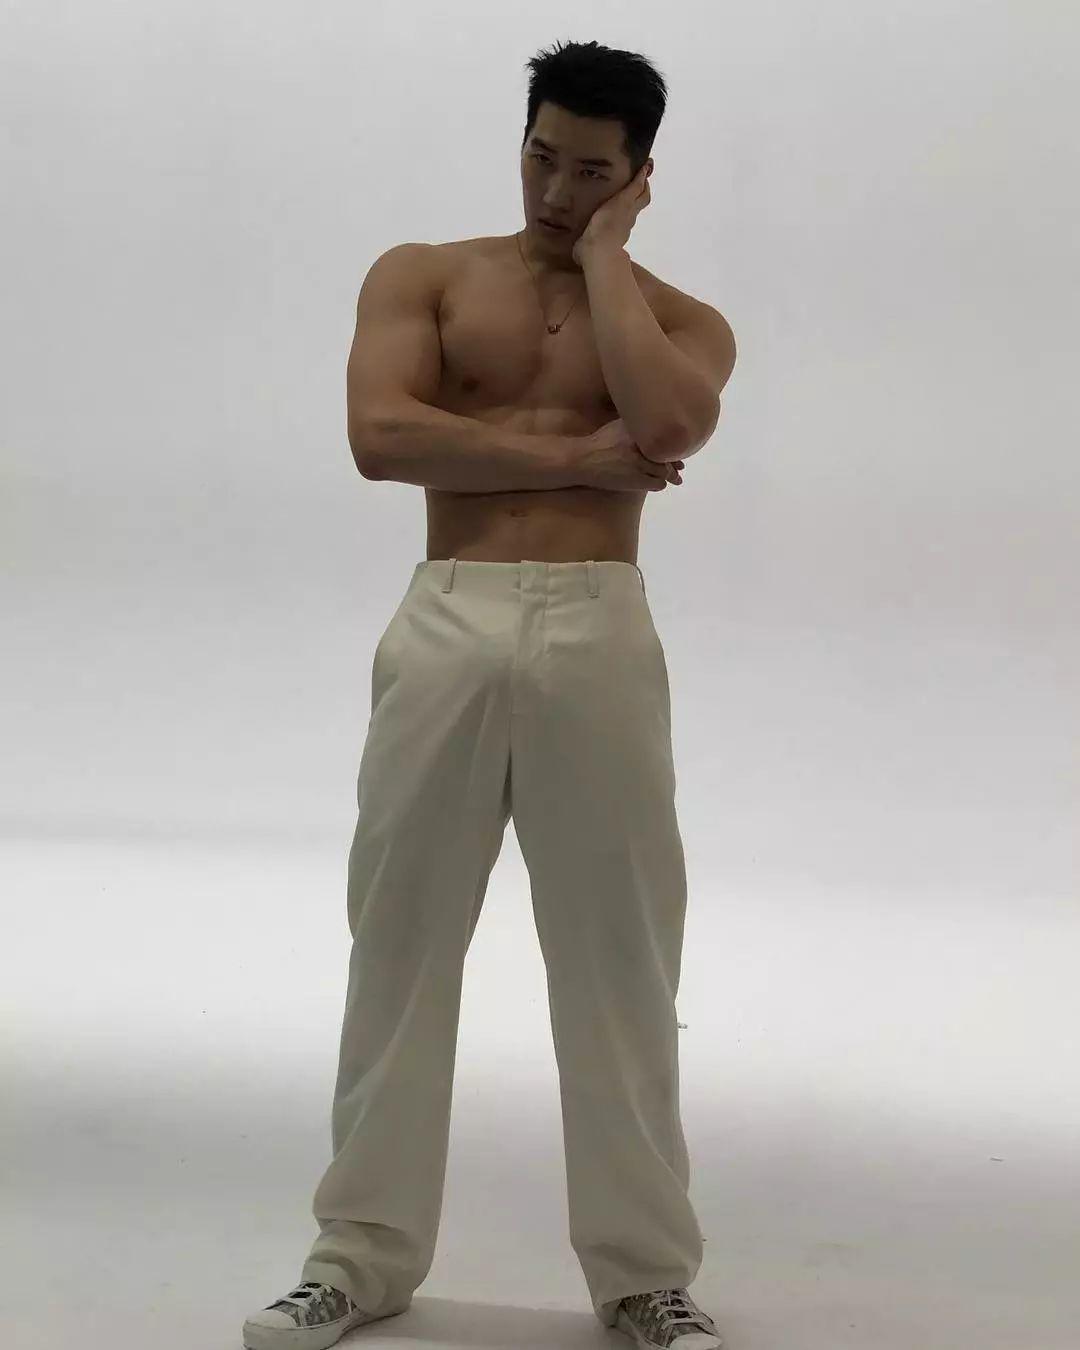 来自韩国的平面模特，谁会拒绝这样一个倒三角身材的男人呢？